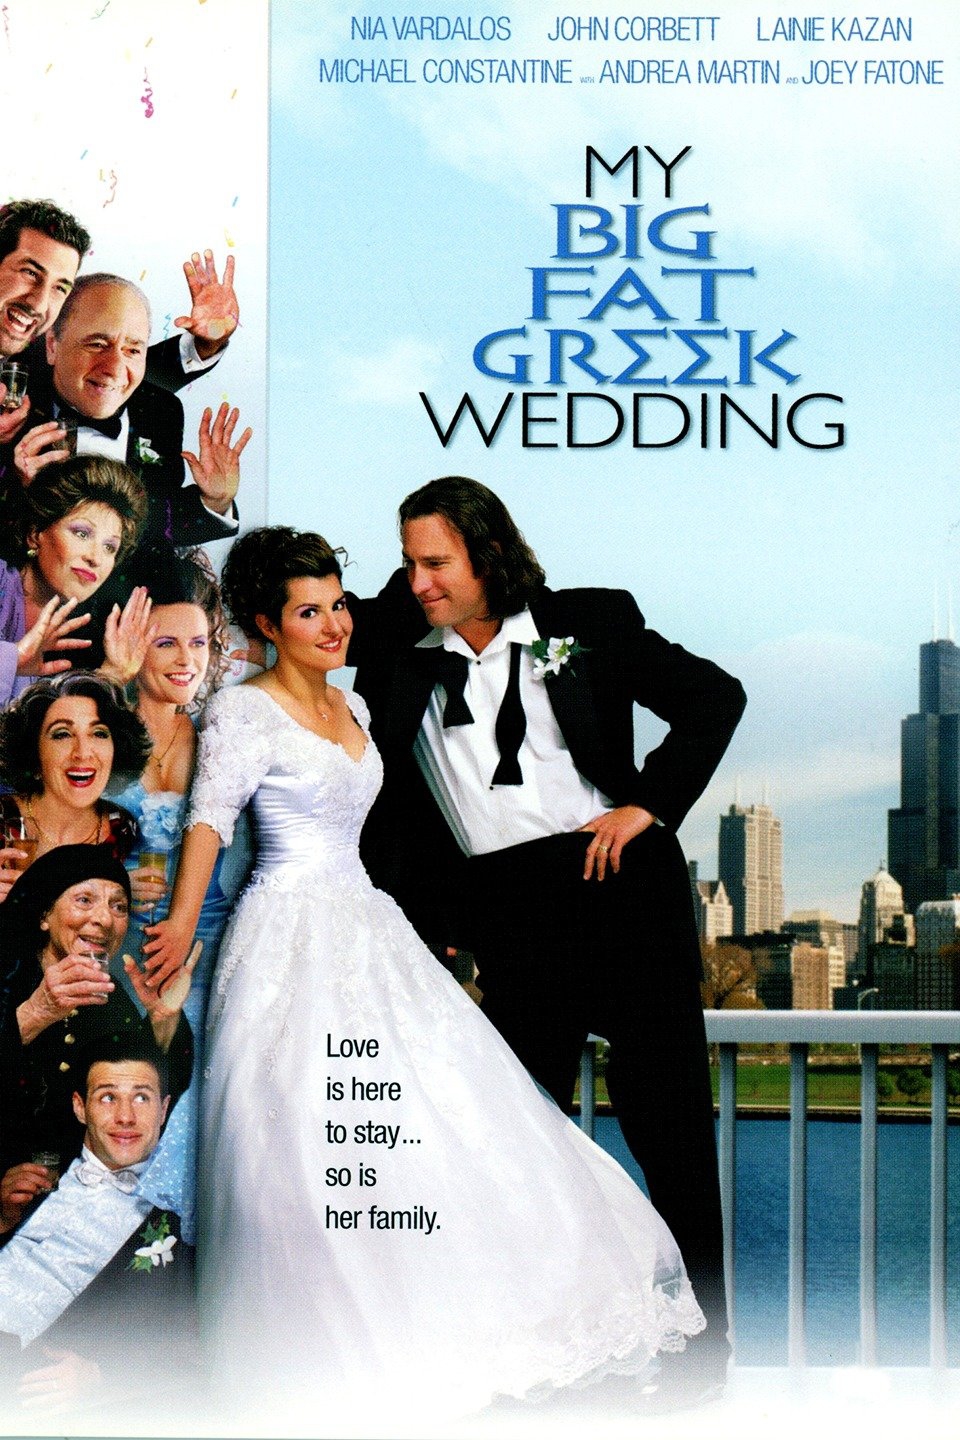 Watch My Big Fat Greek Wedding Online Free Watch My Big Fat Greek Wedding (2002) Online for Free | The Roku